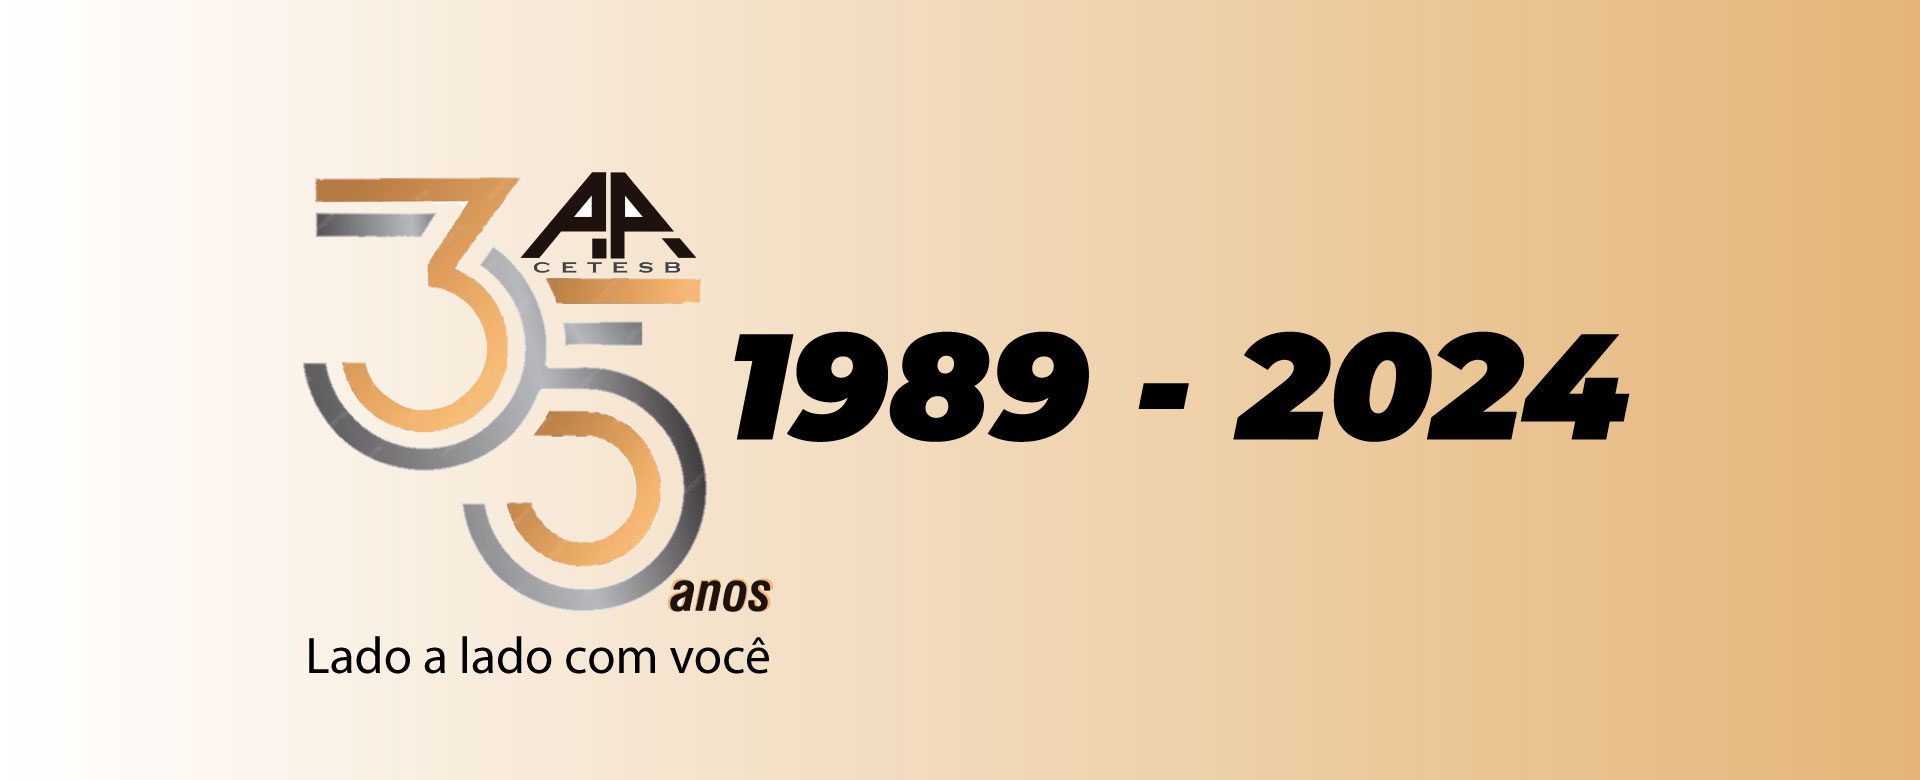 banner-logo-35anos-1